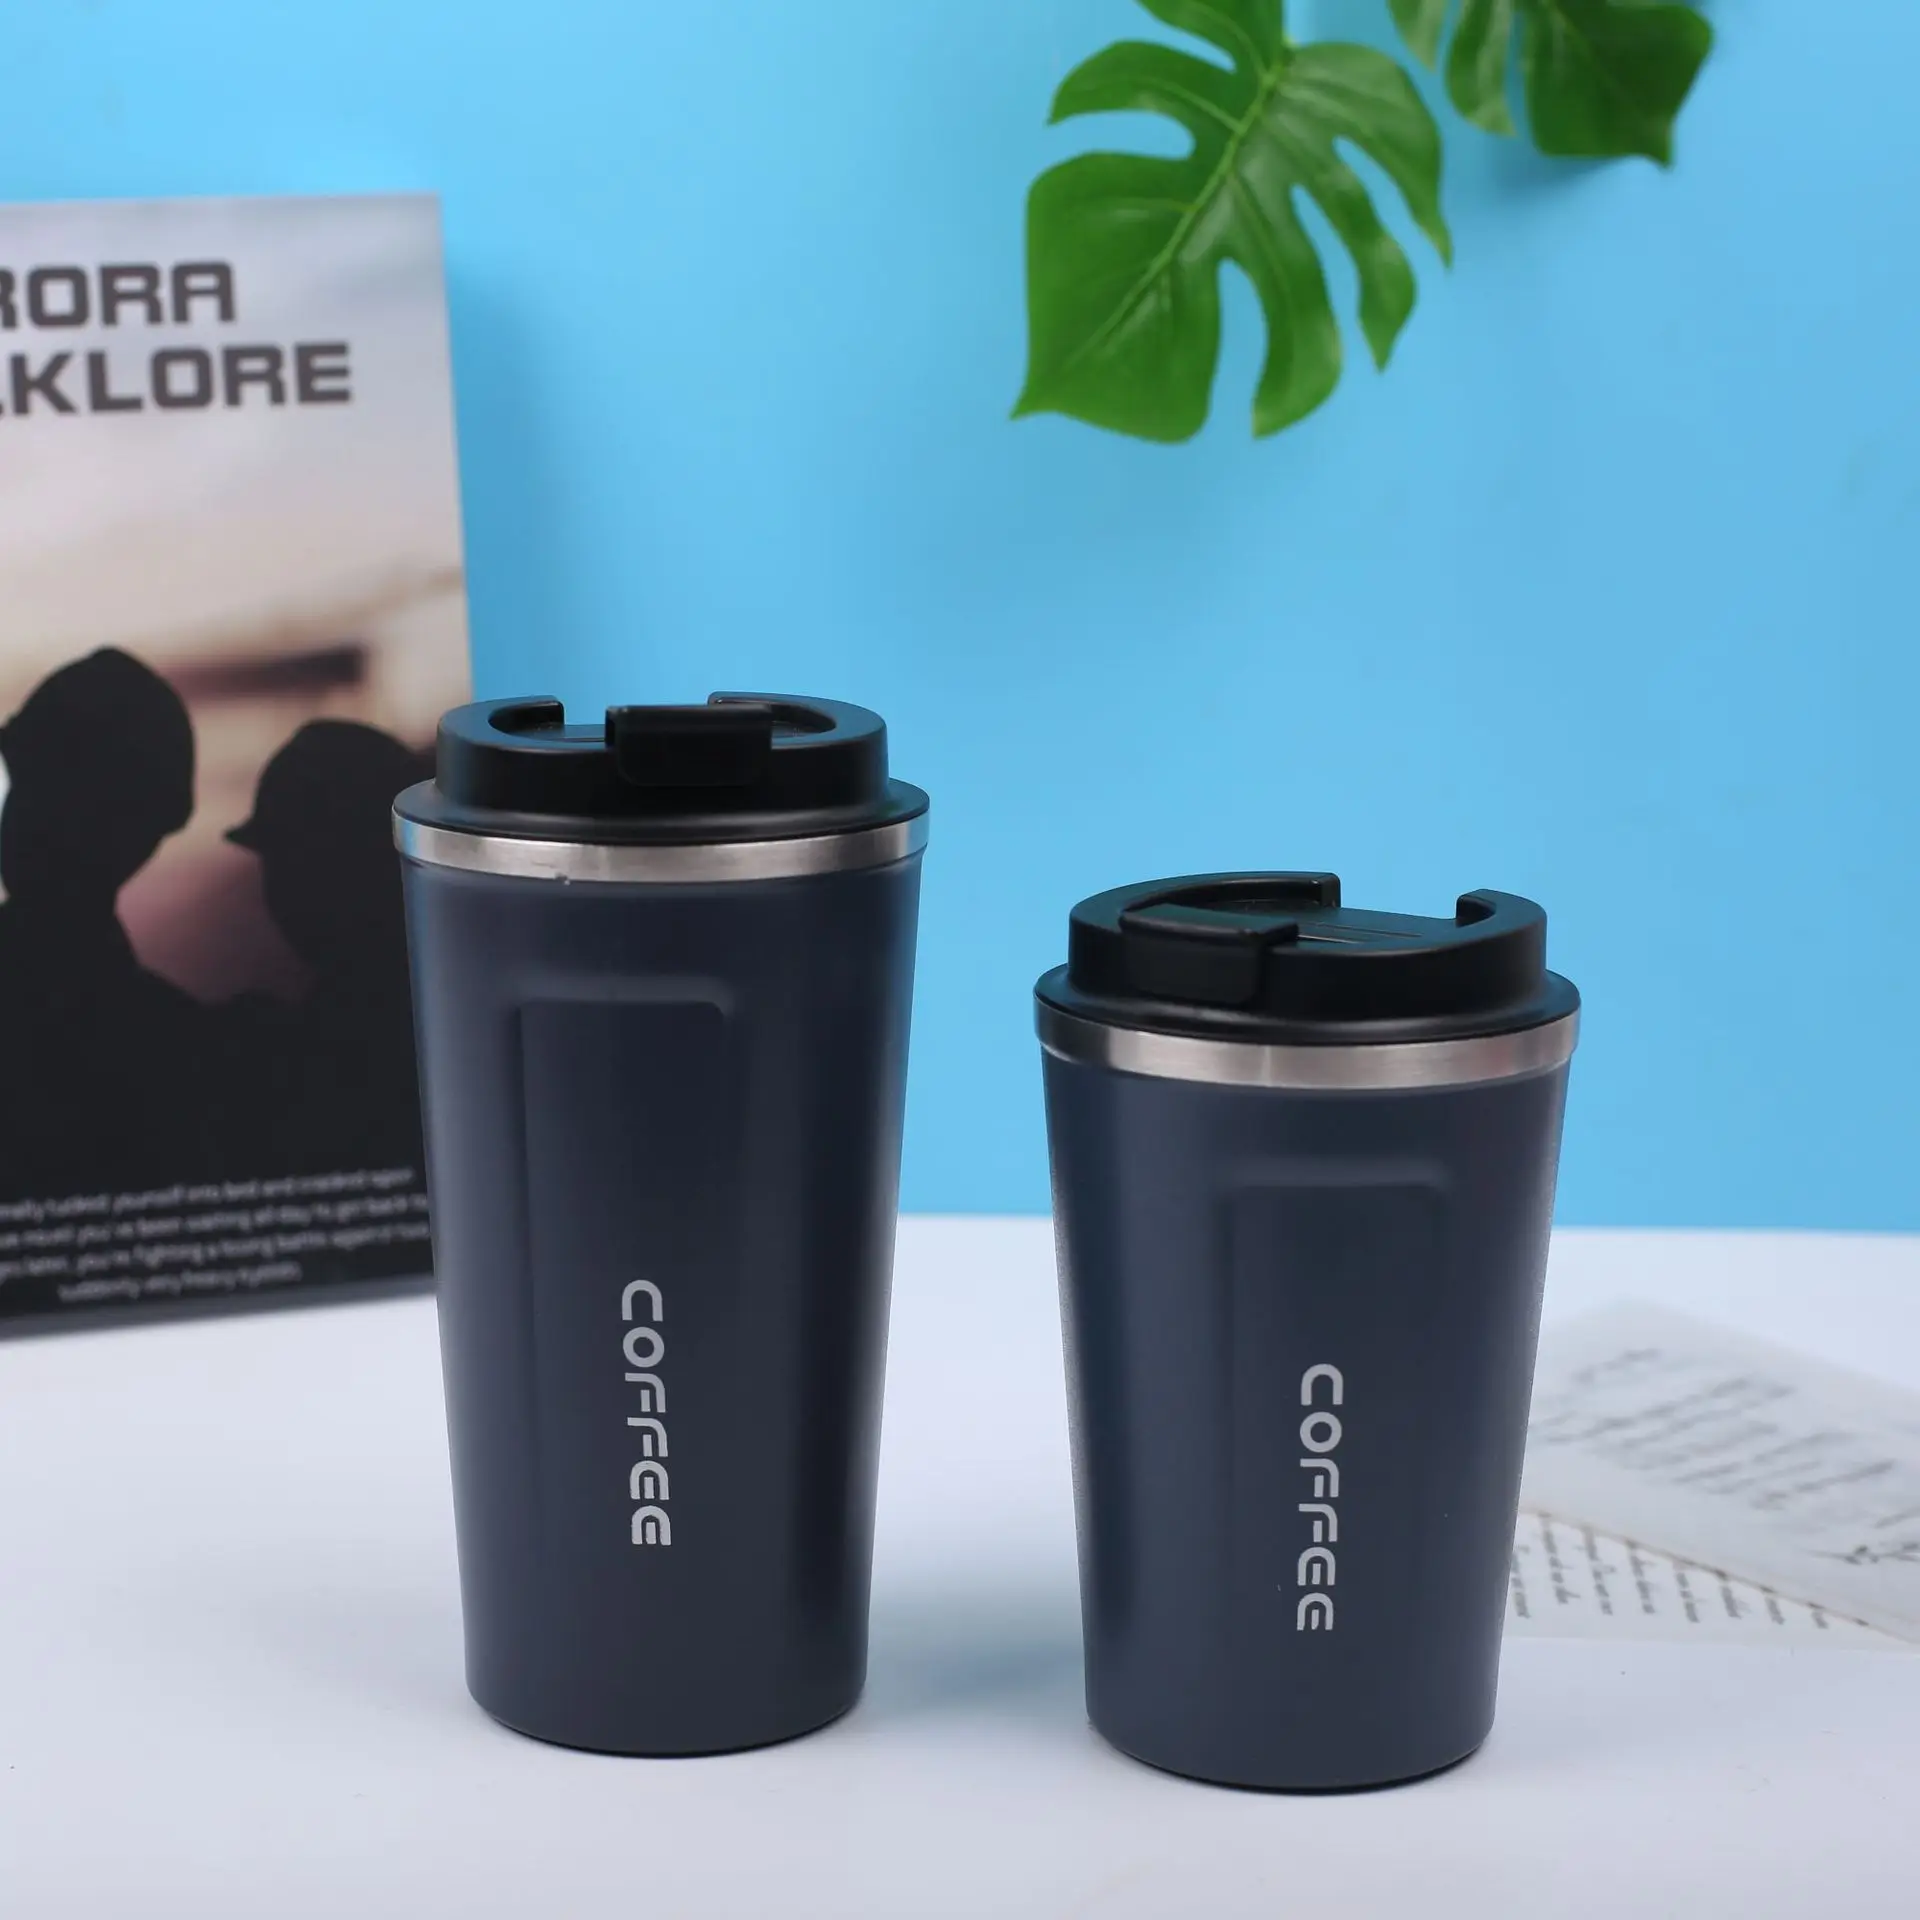 https://ae01.alicdn.com/kf/Sa9a07b8b617a404e862720f15d8f44a76/304-Stainless-Steel-Vacuum-Coffee-Mug-Leak-Proof-Portable-Travel-Car-Water-Bottle-Cup-Thermal-Flask.jpg